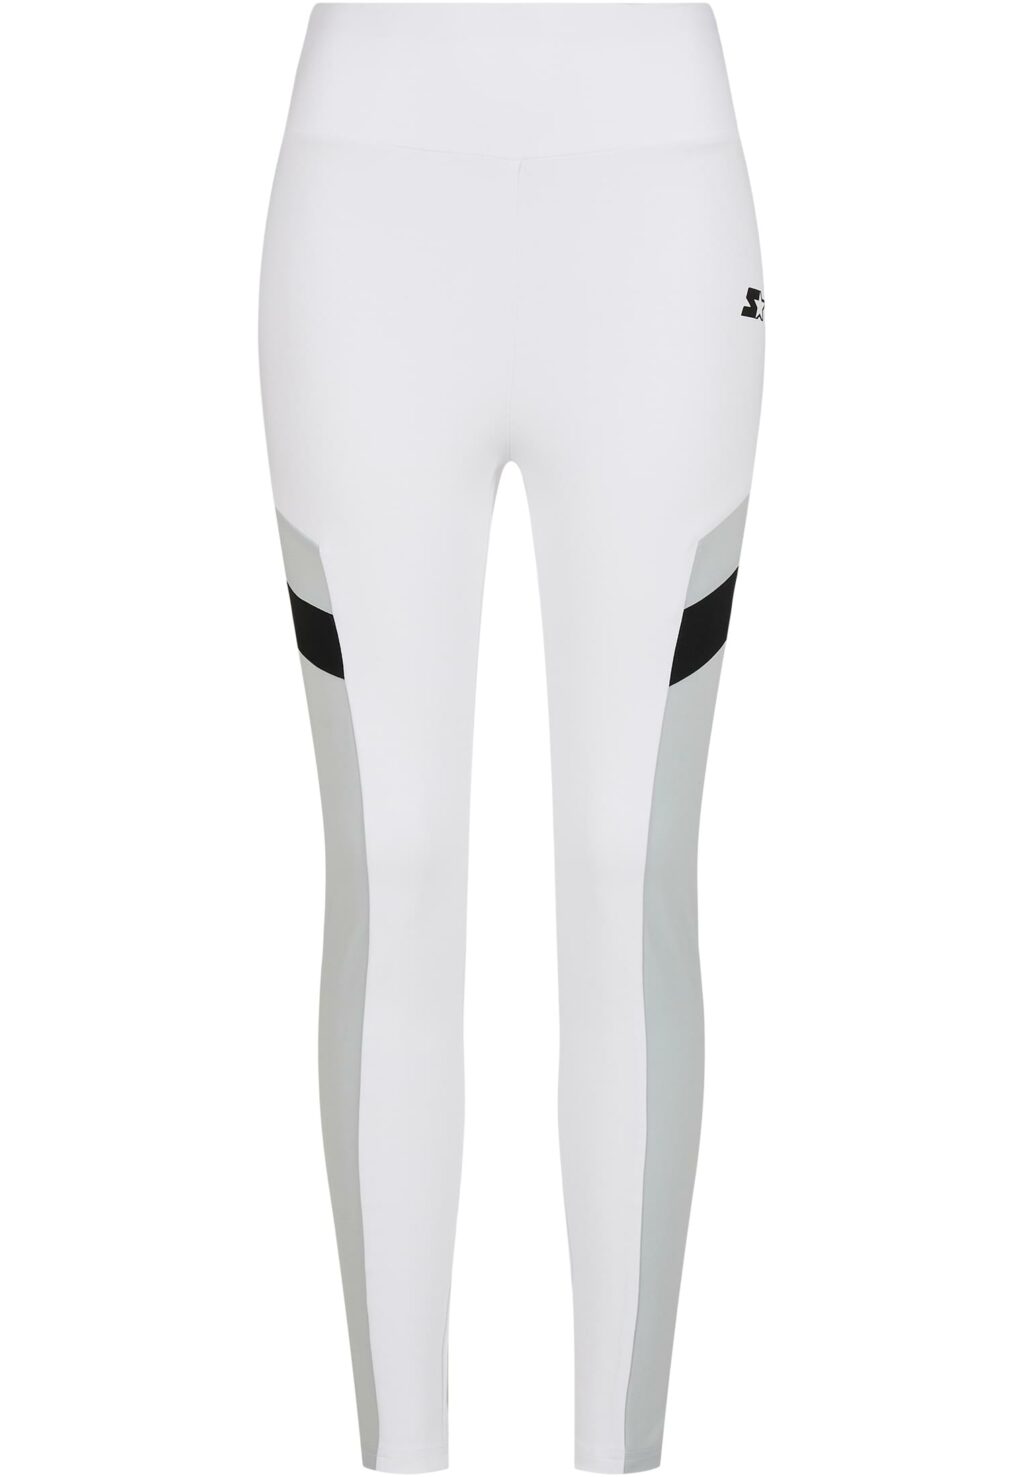 Ladies Starter Highwaist Sports Leggings white/black ST162